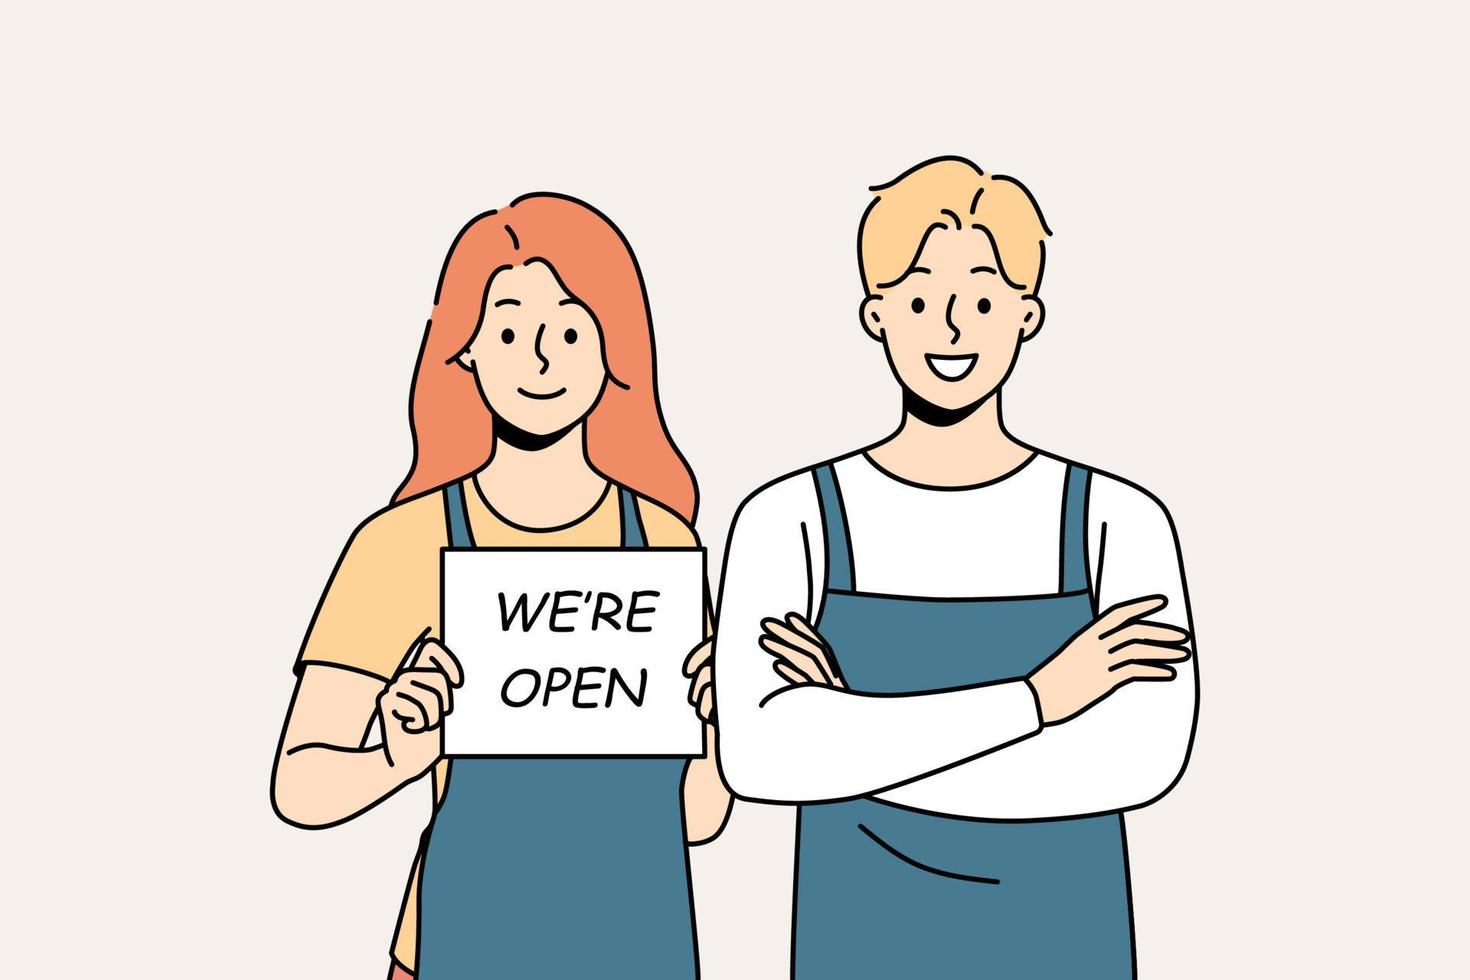 garçons sorridentes em aventais seguram placa aberta. funcionários felizes do café de homem e mulher notificam sobre a abertura da loja. ilustração vetorial. vetor